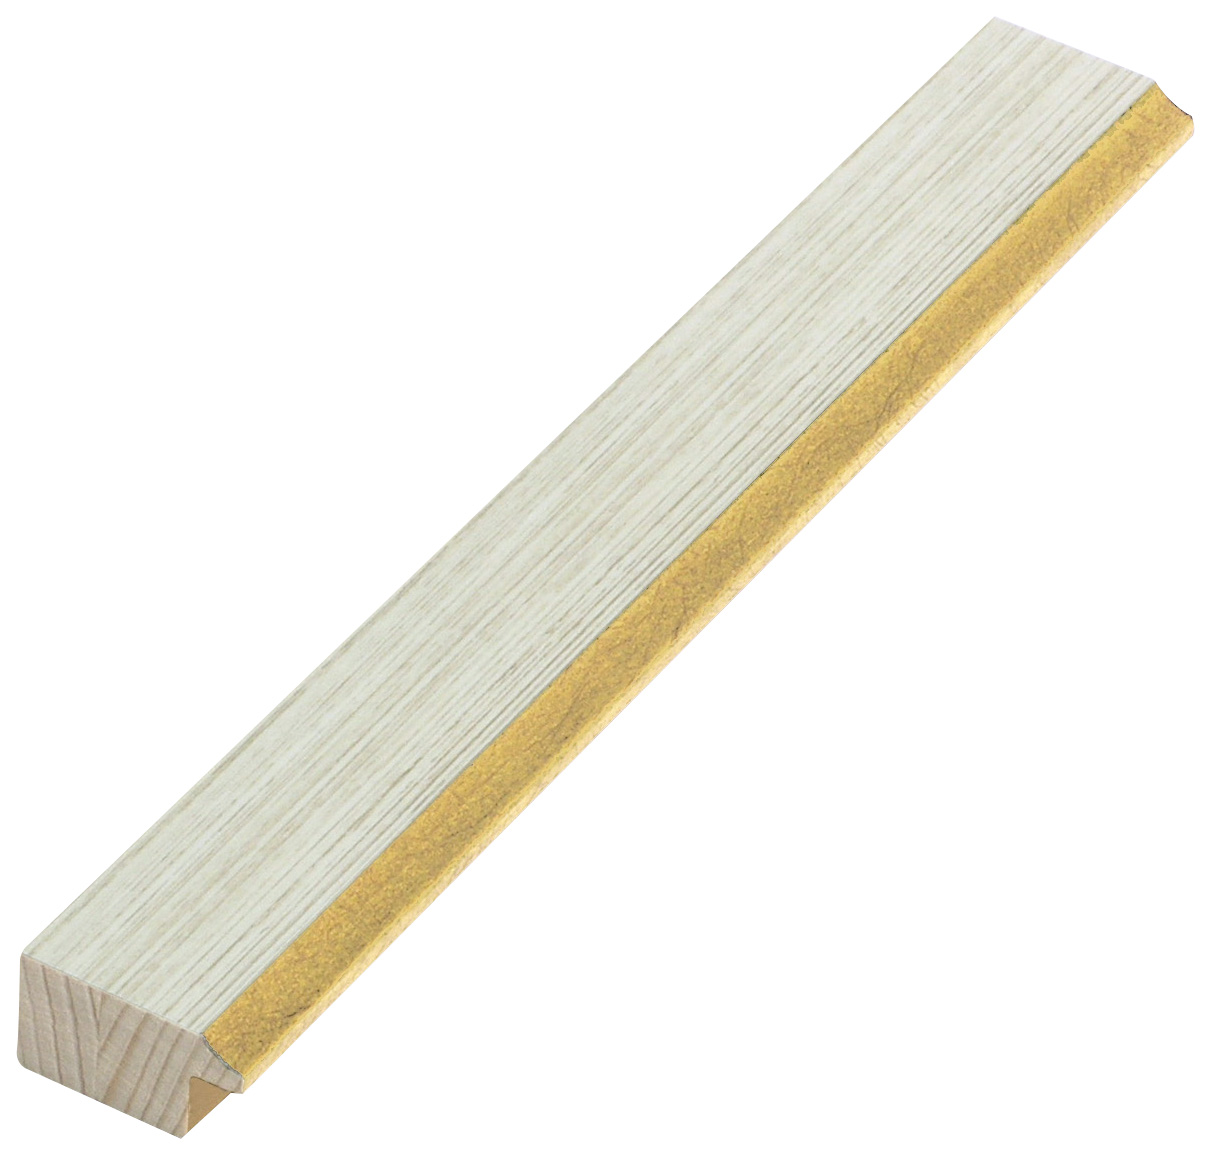 Baguette en pin jointé 28mm - ivoire, fil or - 28CREMAORO